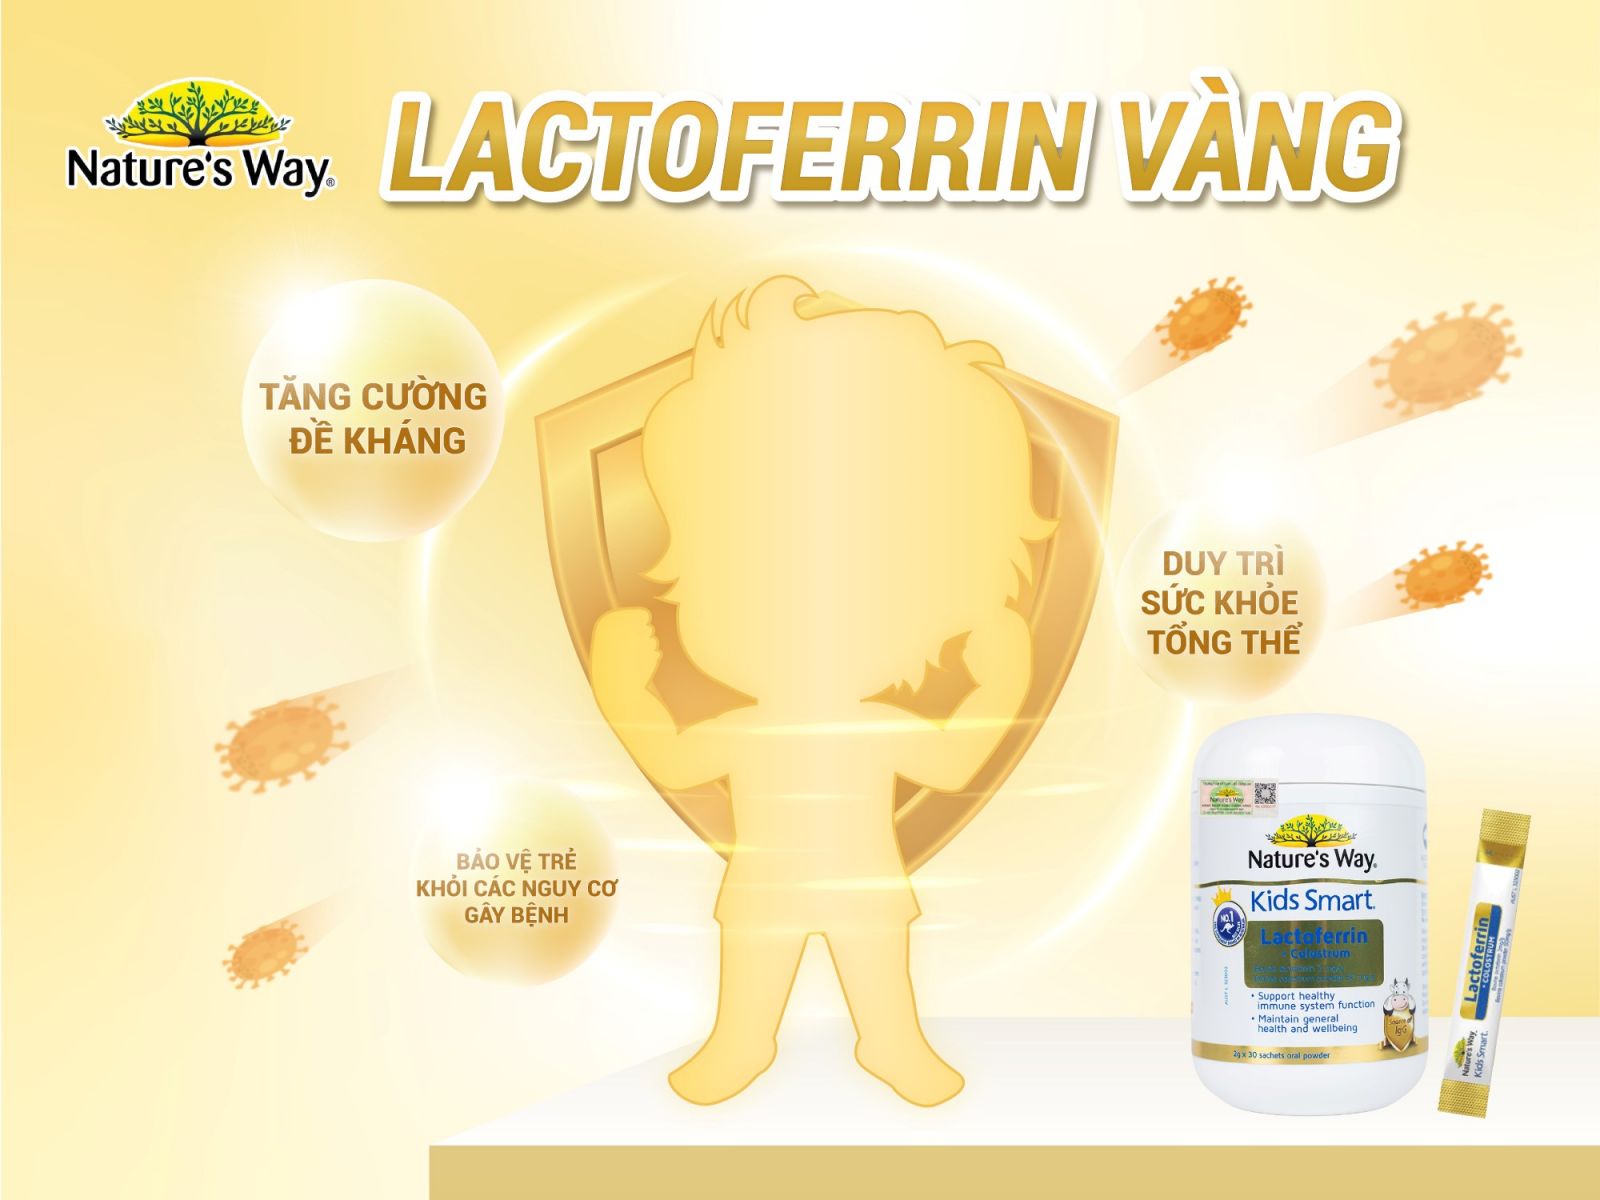 Nature’s Way Kids Smart Lactoferrin + Colostrum – Hỗ trợ tăng cường đề kháng, miễn dịch cho bé